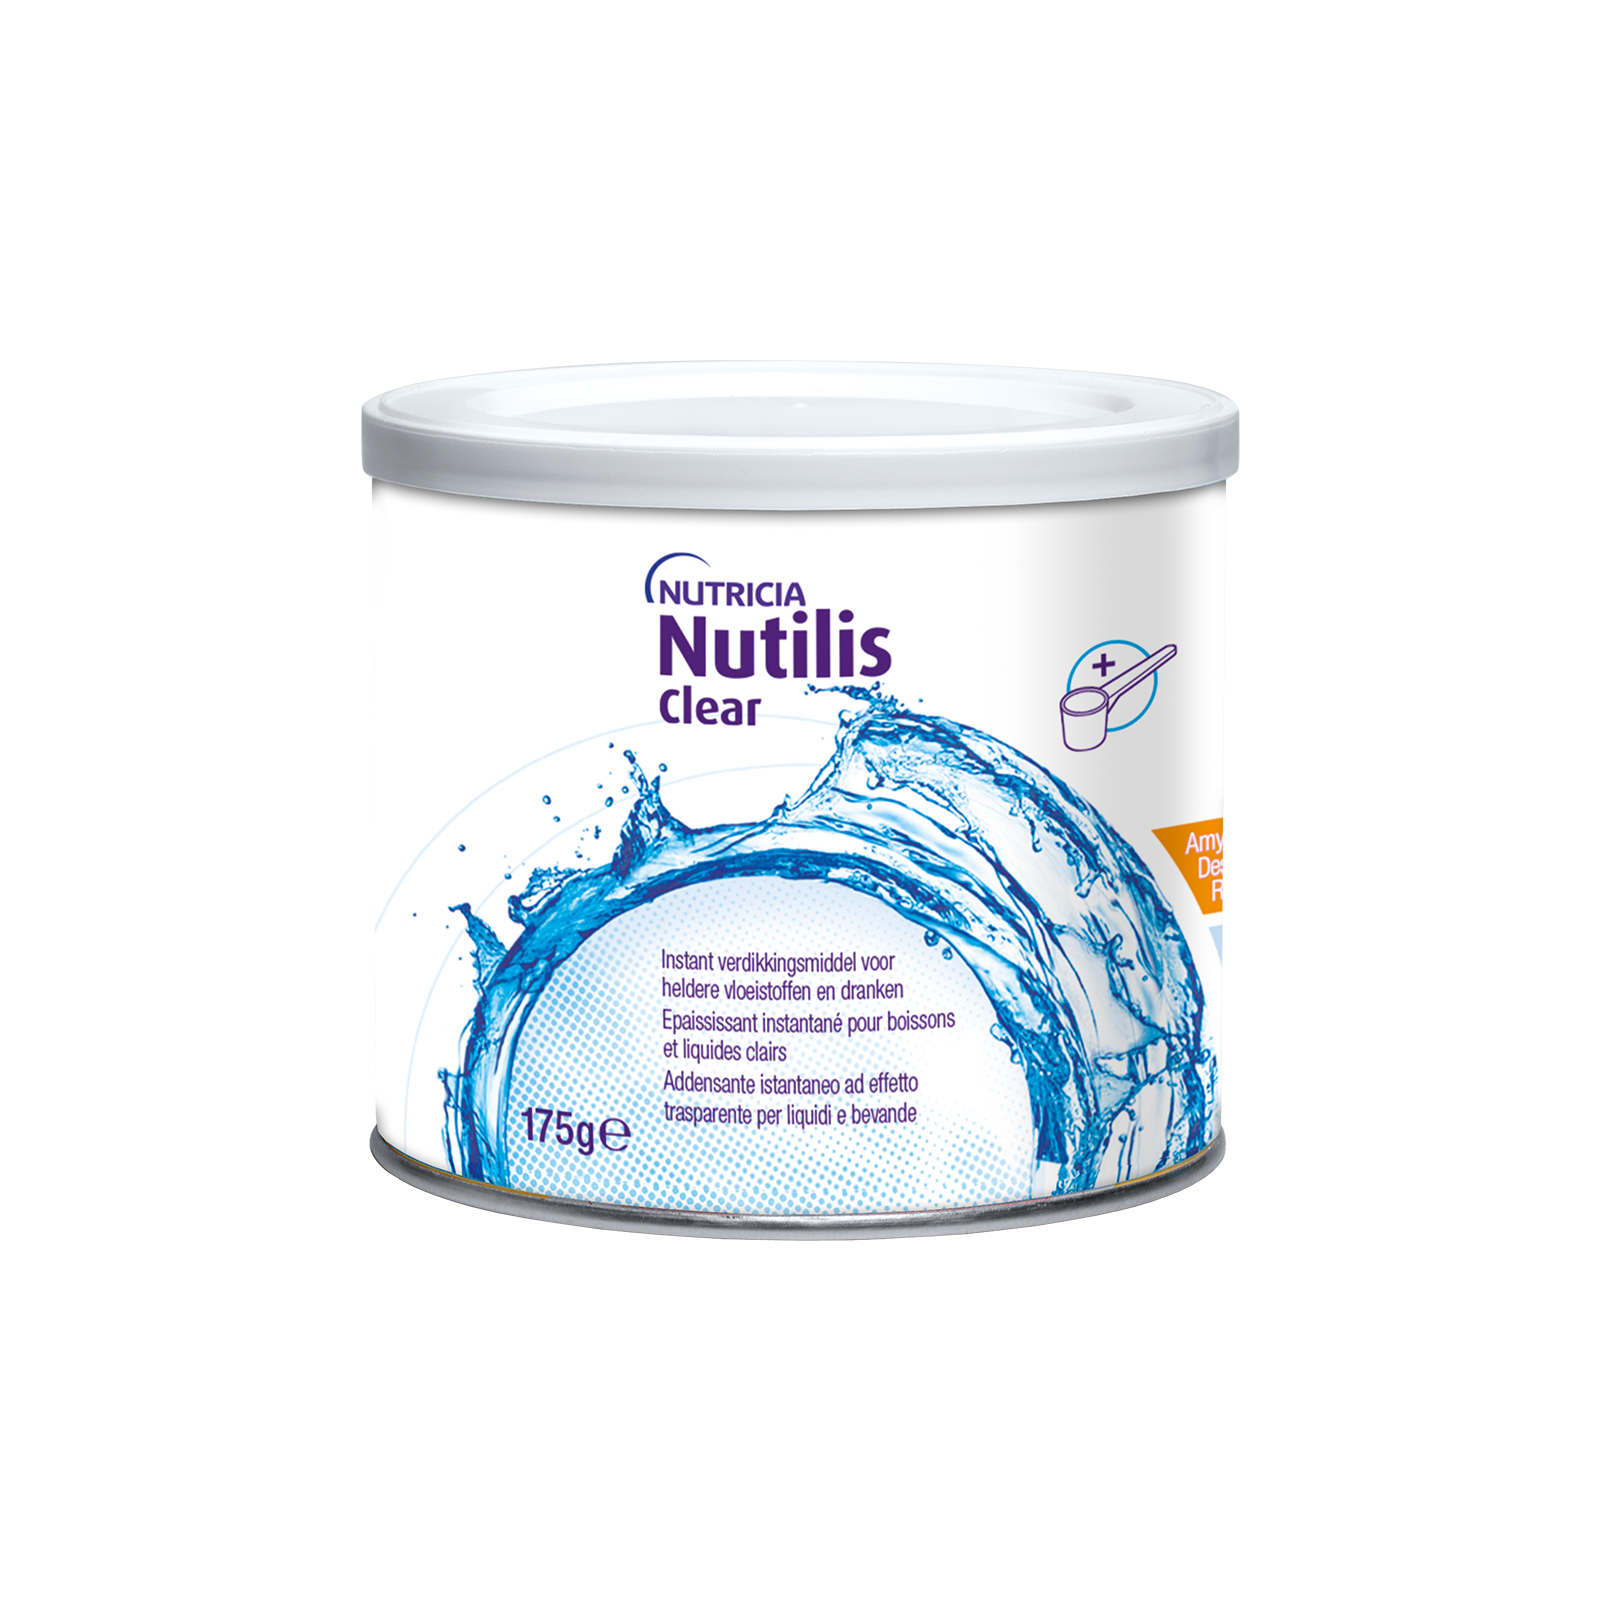 Nutilis Clear 1x Barattolo 175 g | Nutricia